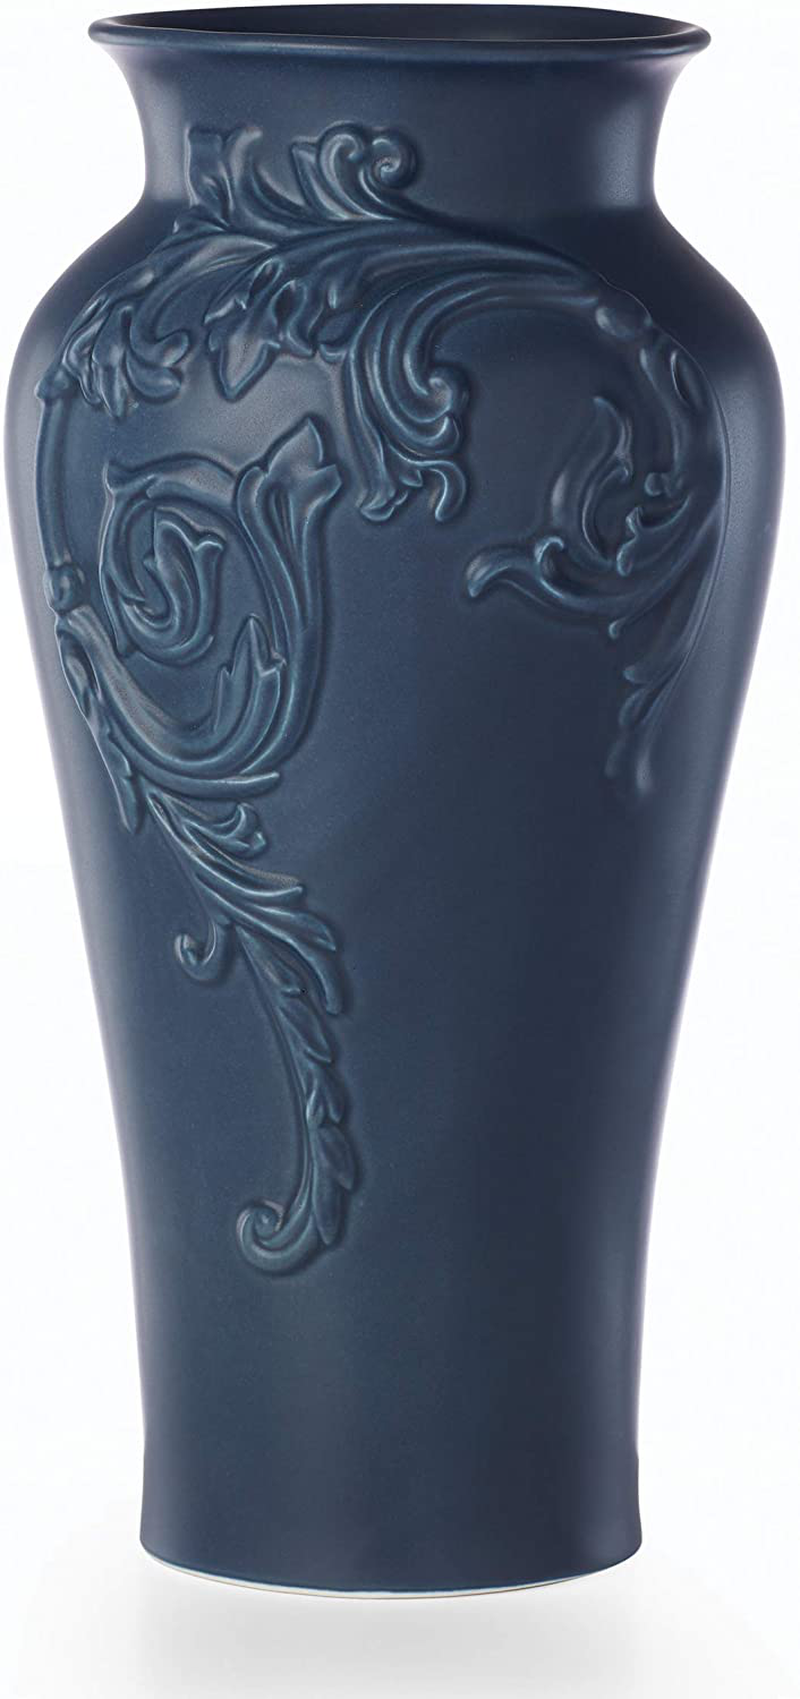 Lenox Sprig & Vine Tall Vase, 3.25 LB, Multi Home & Garden > Decor > Vases LENOX Vine Tall Vase  